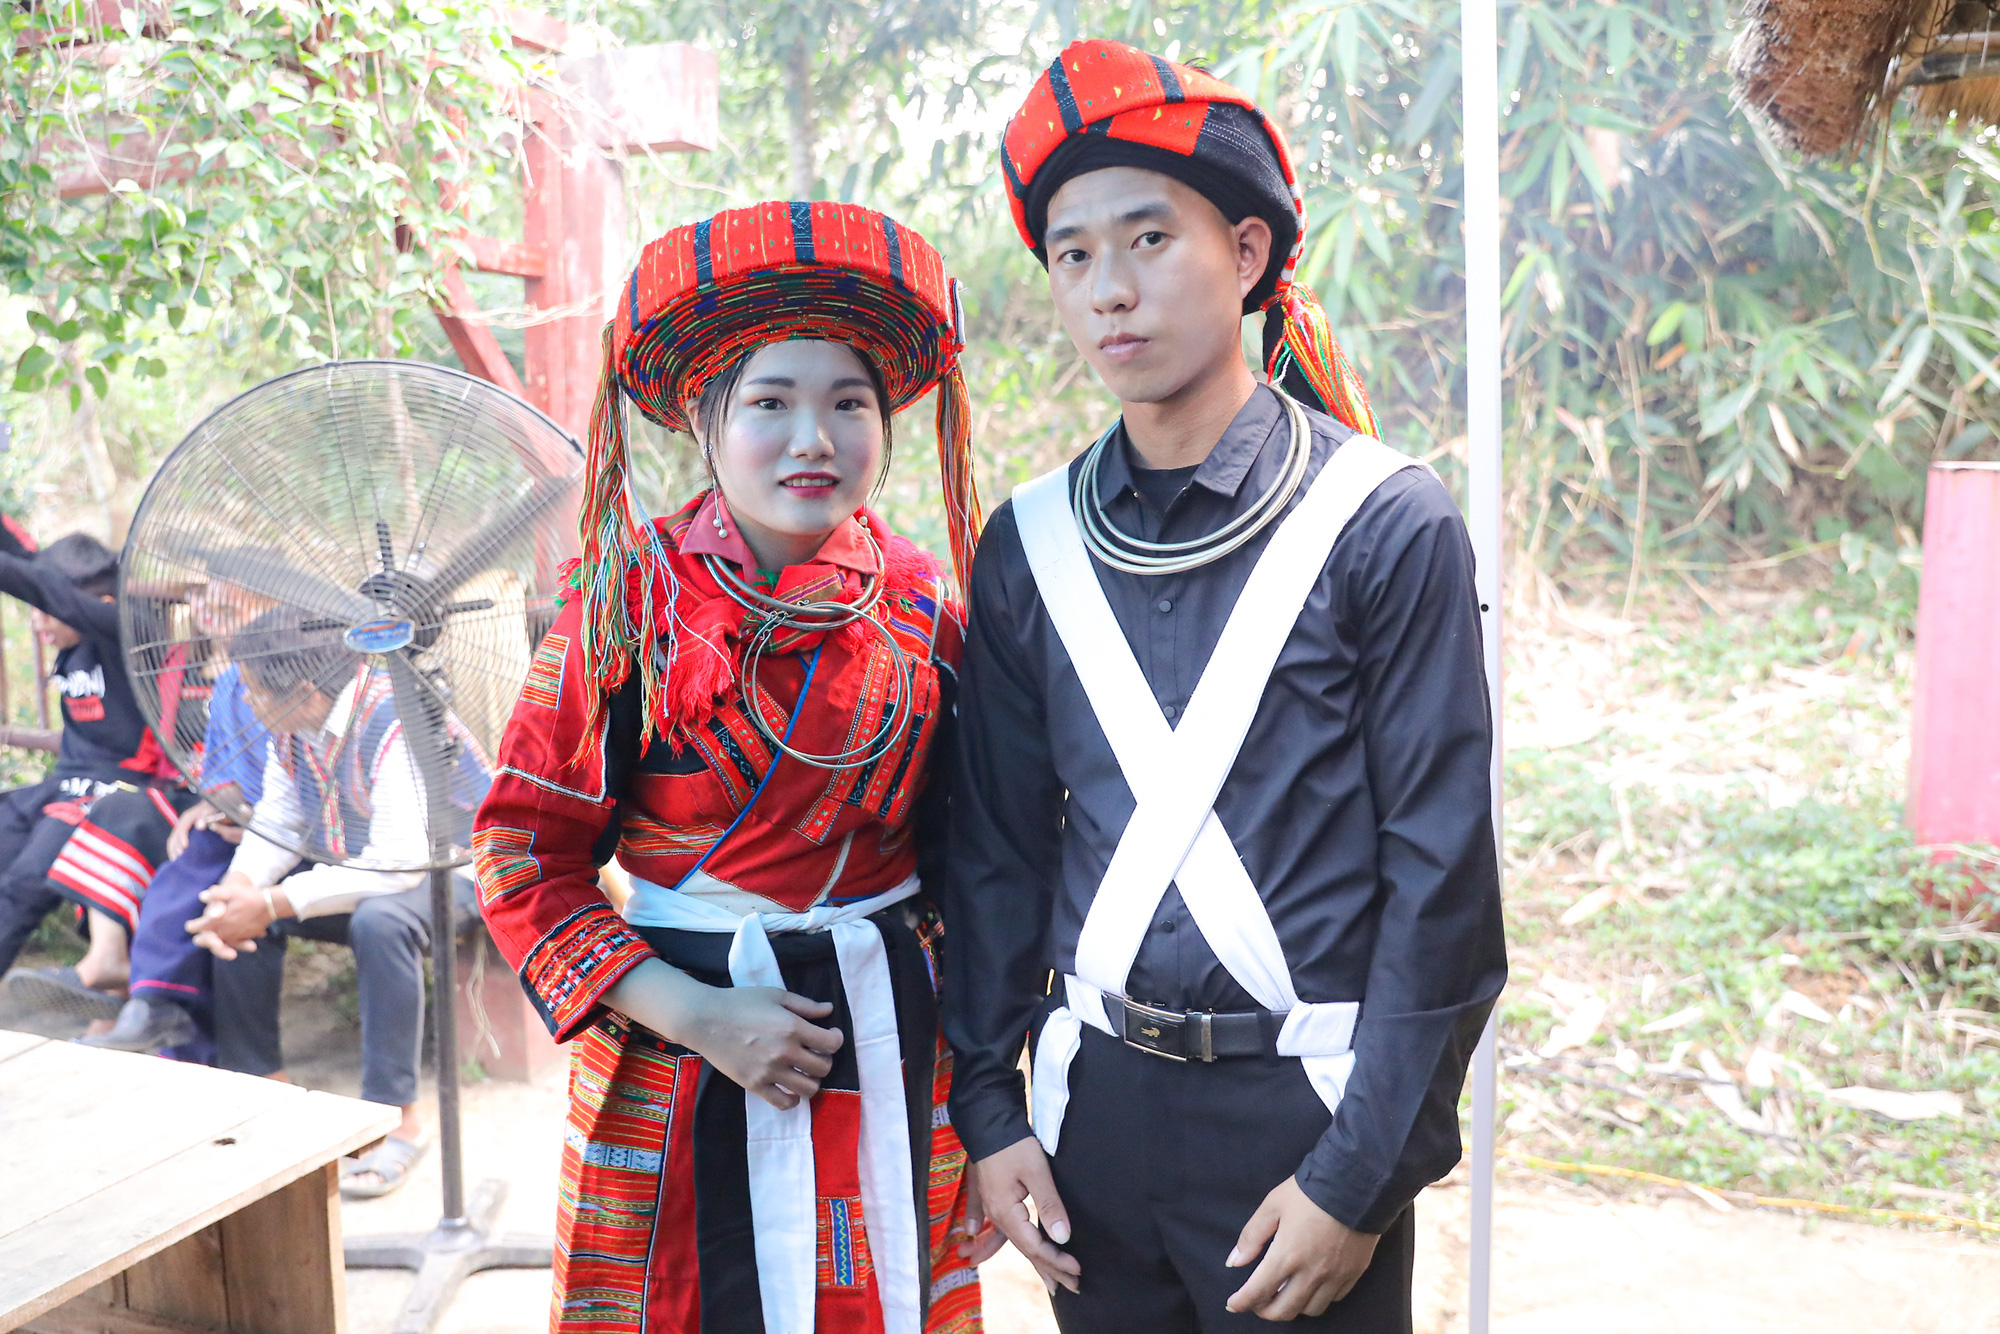 Tái hiện lễ cưới của Dân tộc Pà Thẻn (Hà Giang) và nghi lễ Mừng lúa mới của dân tộc Bahnar (Gia Lai)  tại Hà Nội - Ảnh 8.